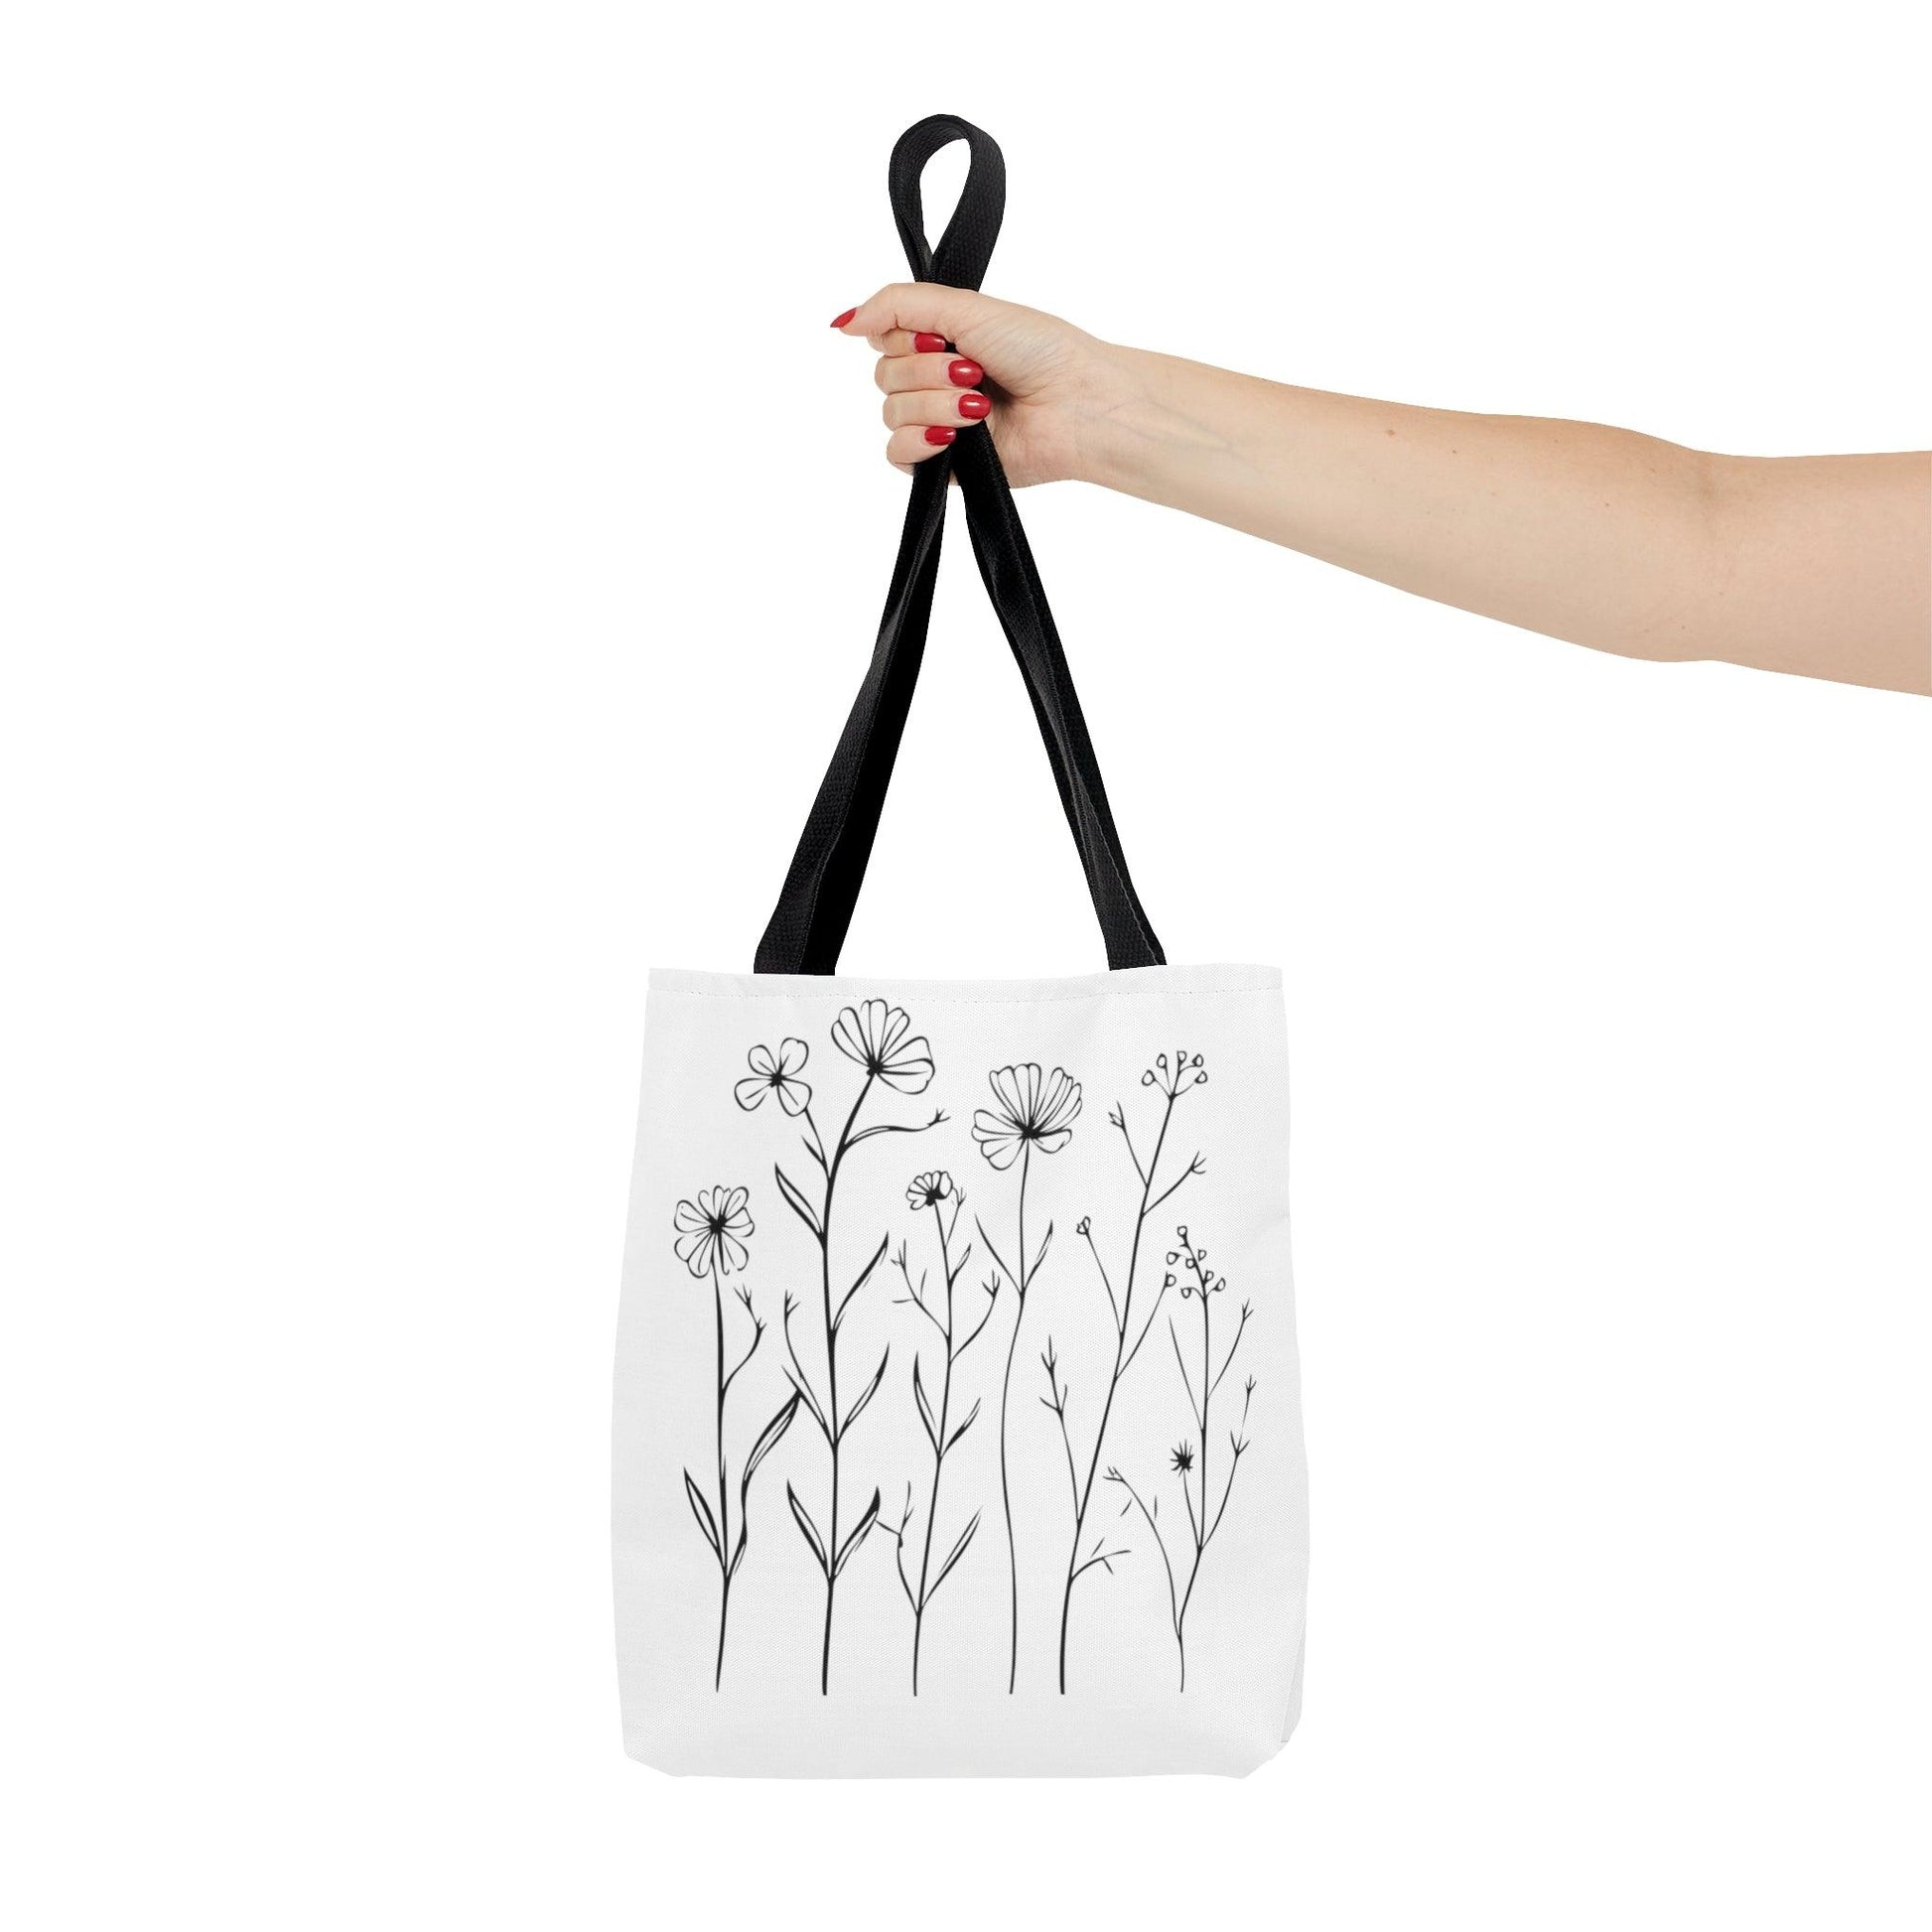 Minimalist Flowers Tote Bag